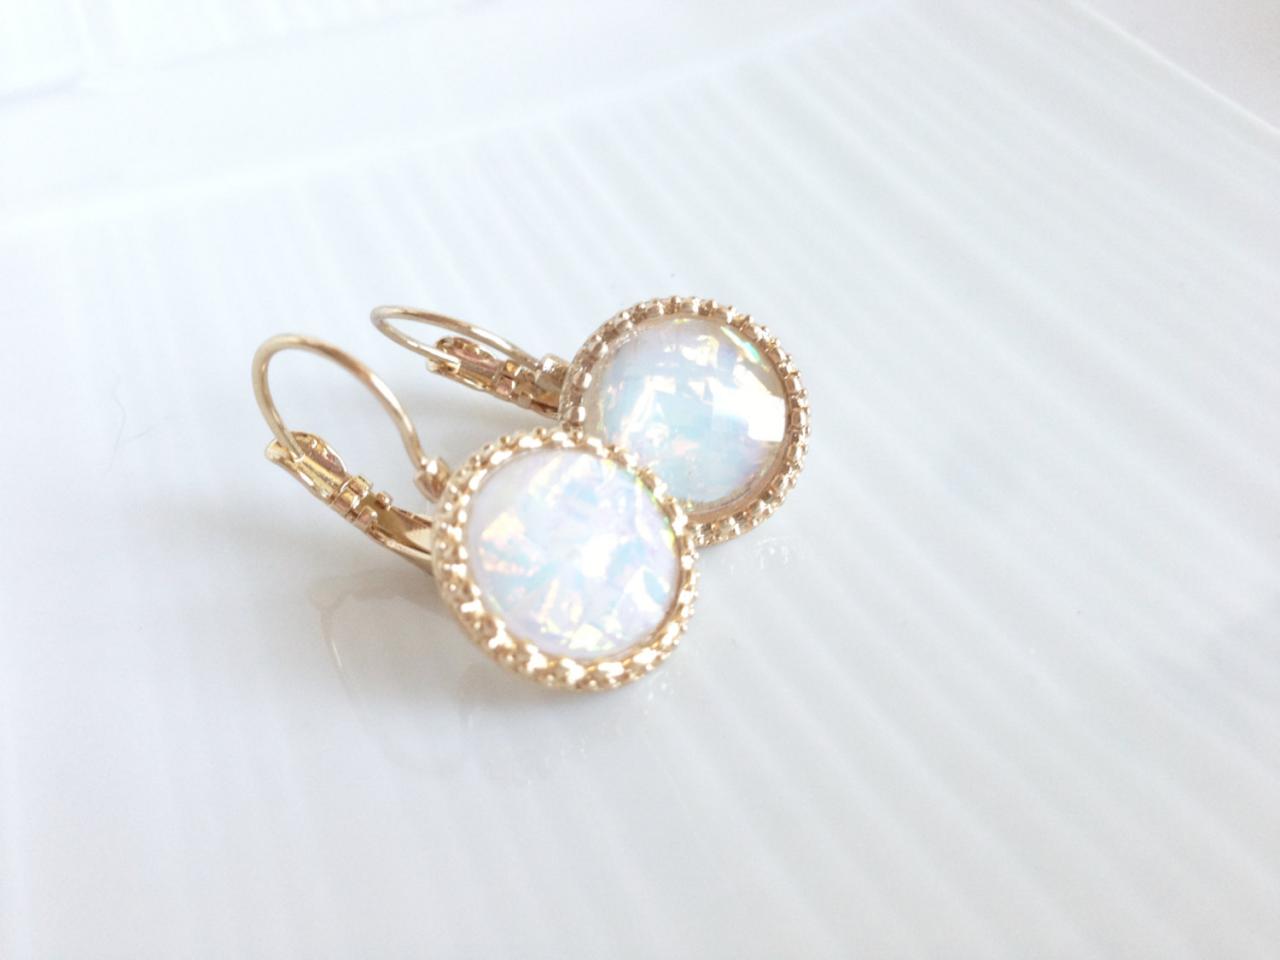 Gold Dangle Earrings - Drop Earrings - French Back Earrings - White Opal